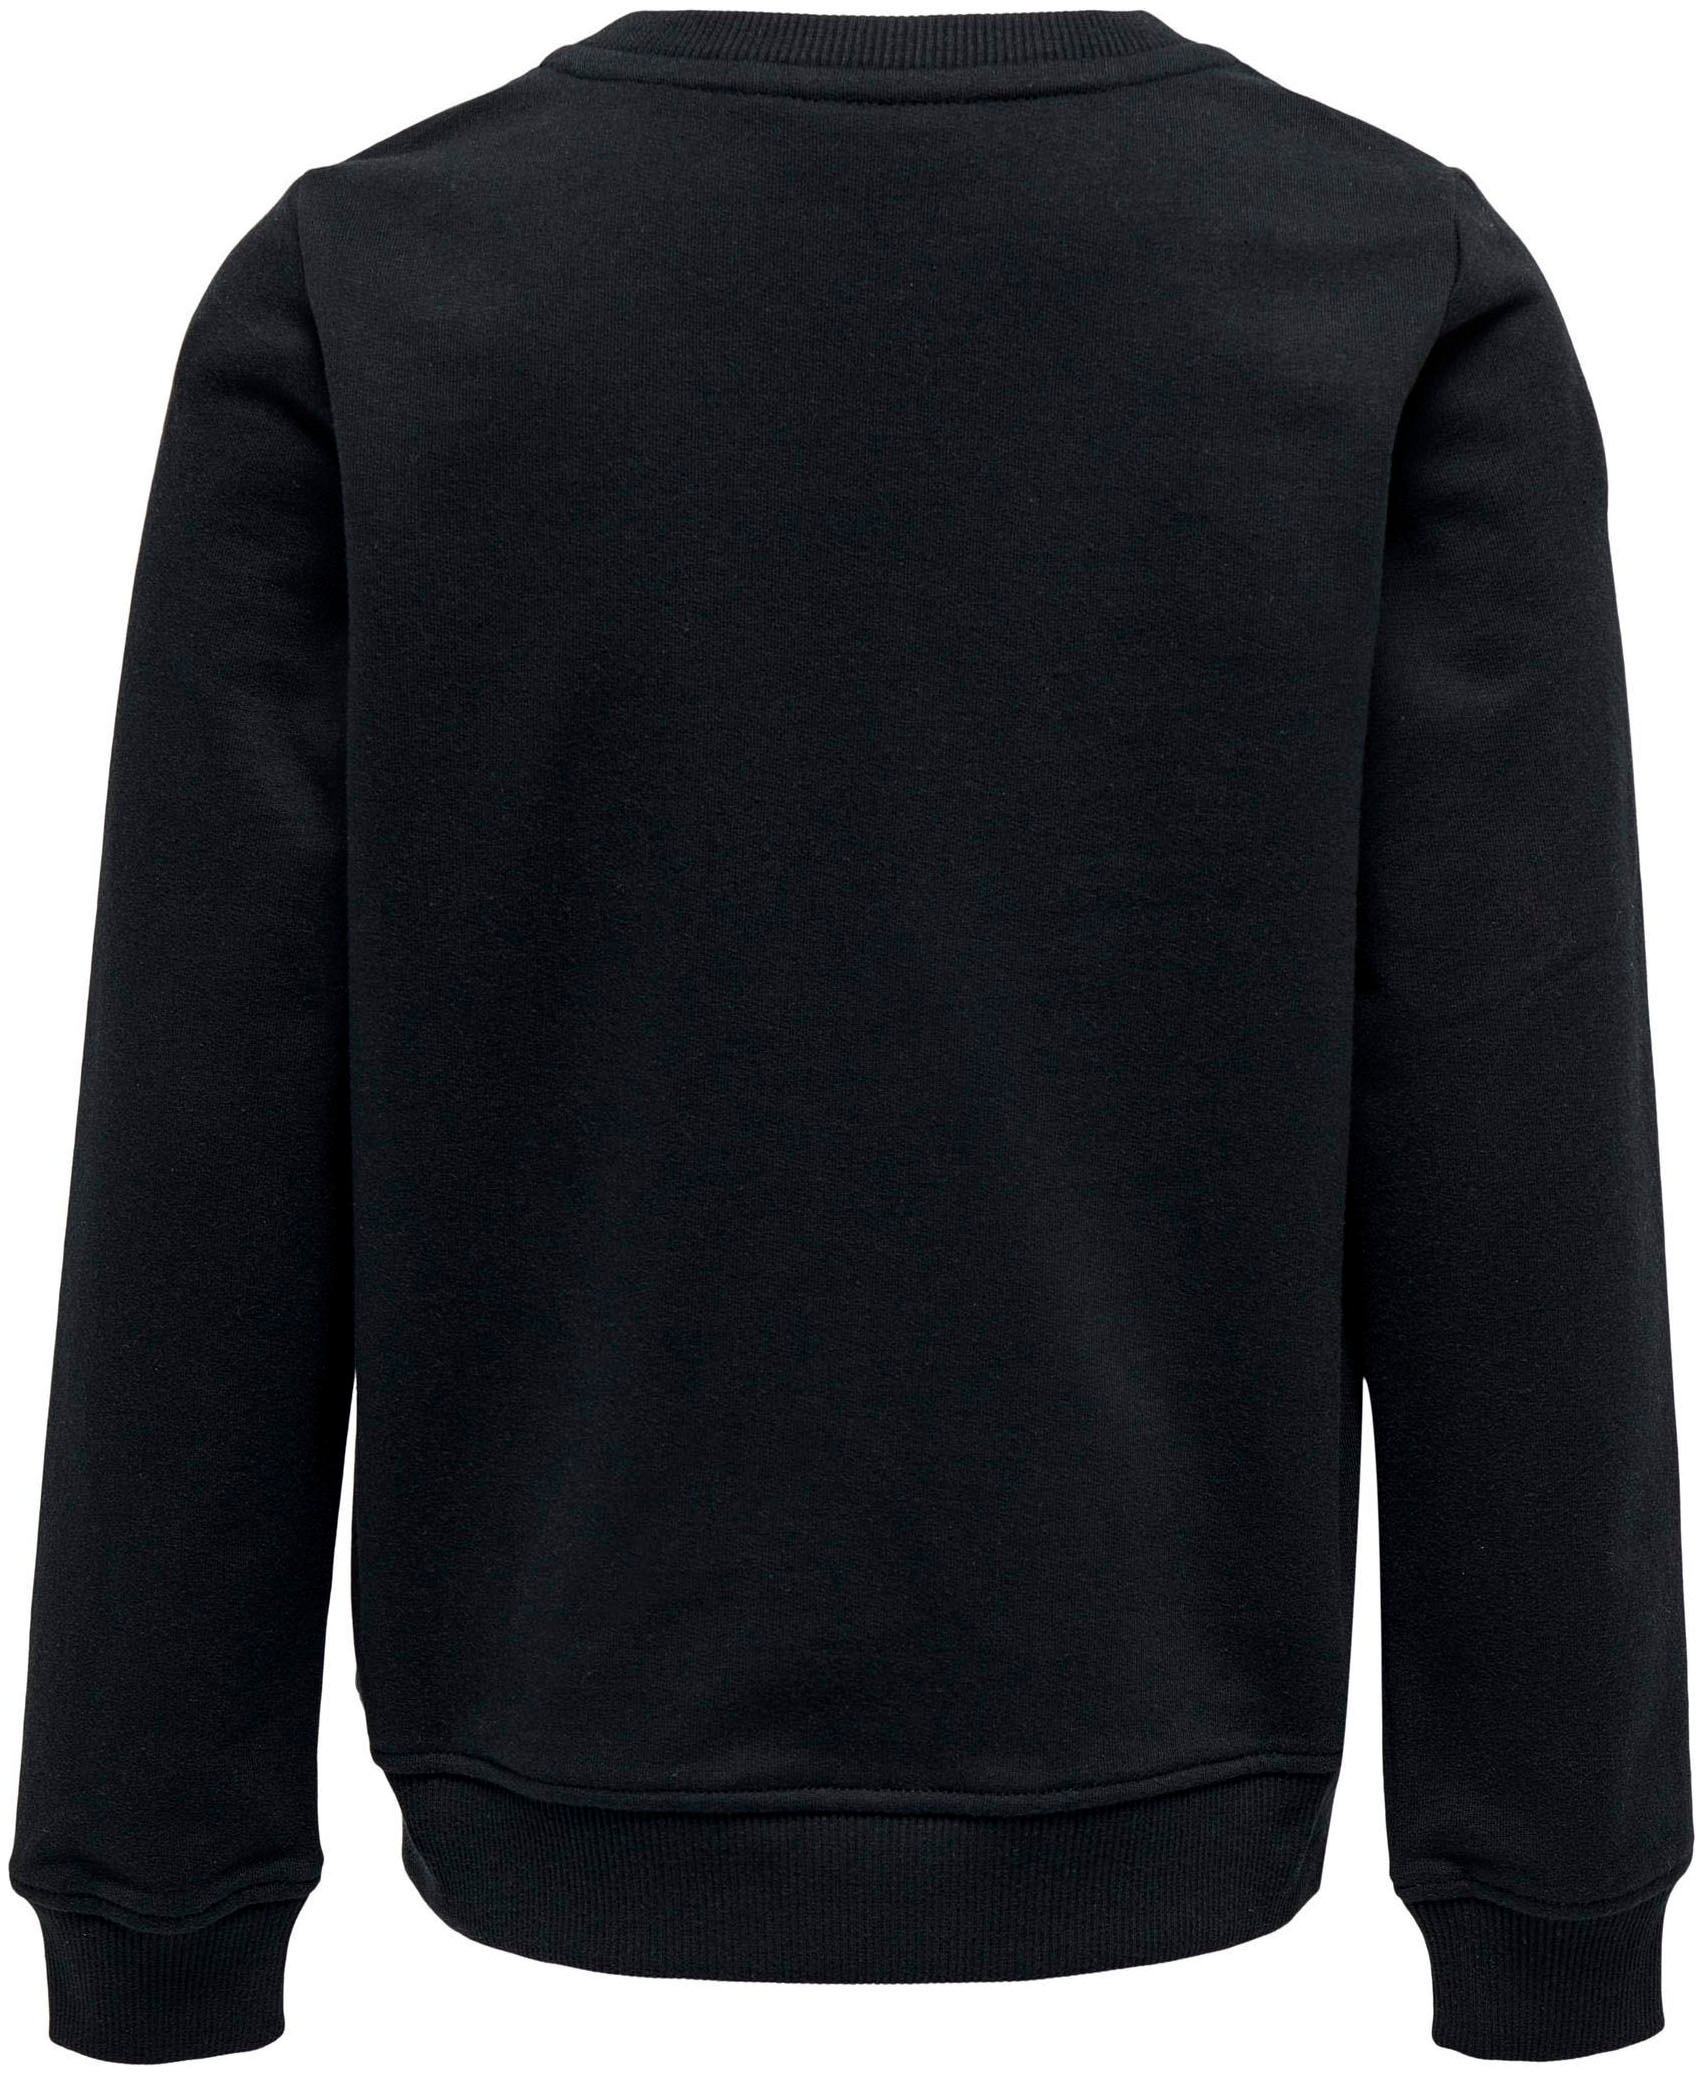 KIDS ONLY Sweatshirt »KOGDISCO REG L/S RHINESTONE« kaufen | BAUR